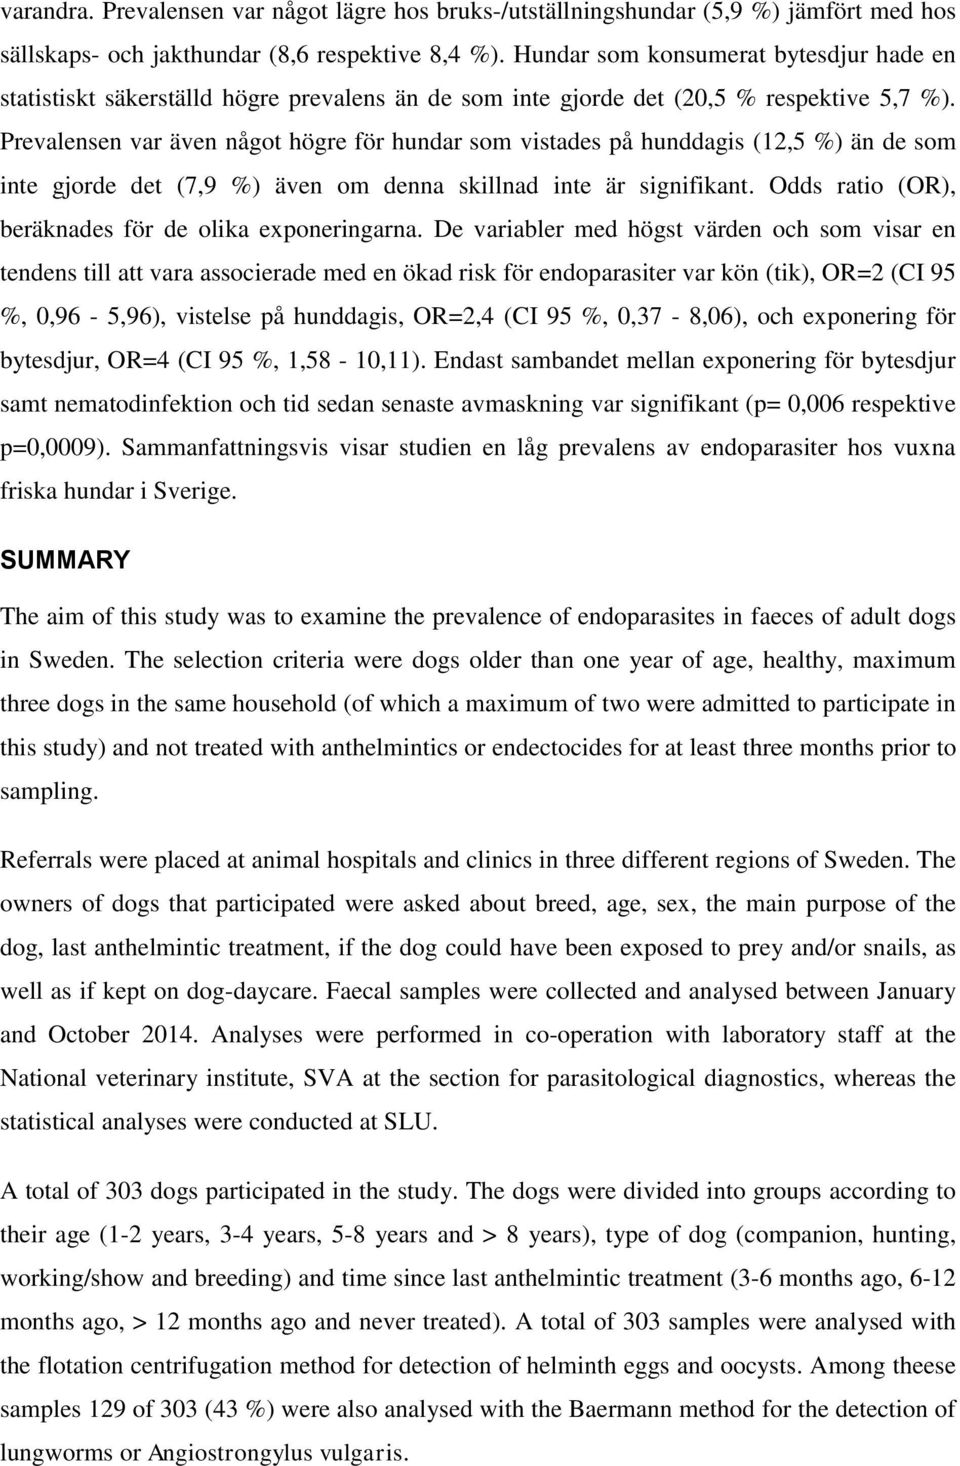 Prevalensen var även något högre för hundar som vistades på hunddagis (12,5 %) än de som inte gjorde det (7,9 %) även om denna skillnad inte är signifikant.